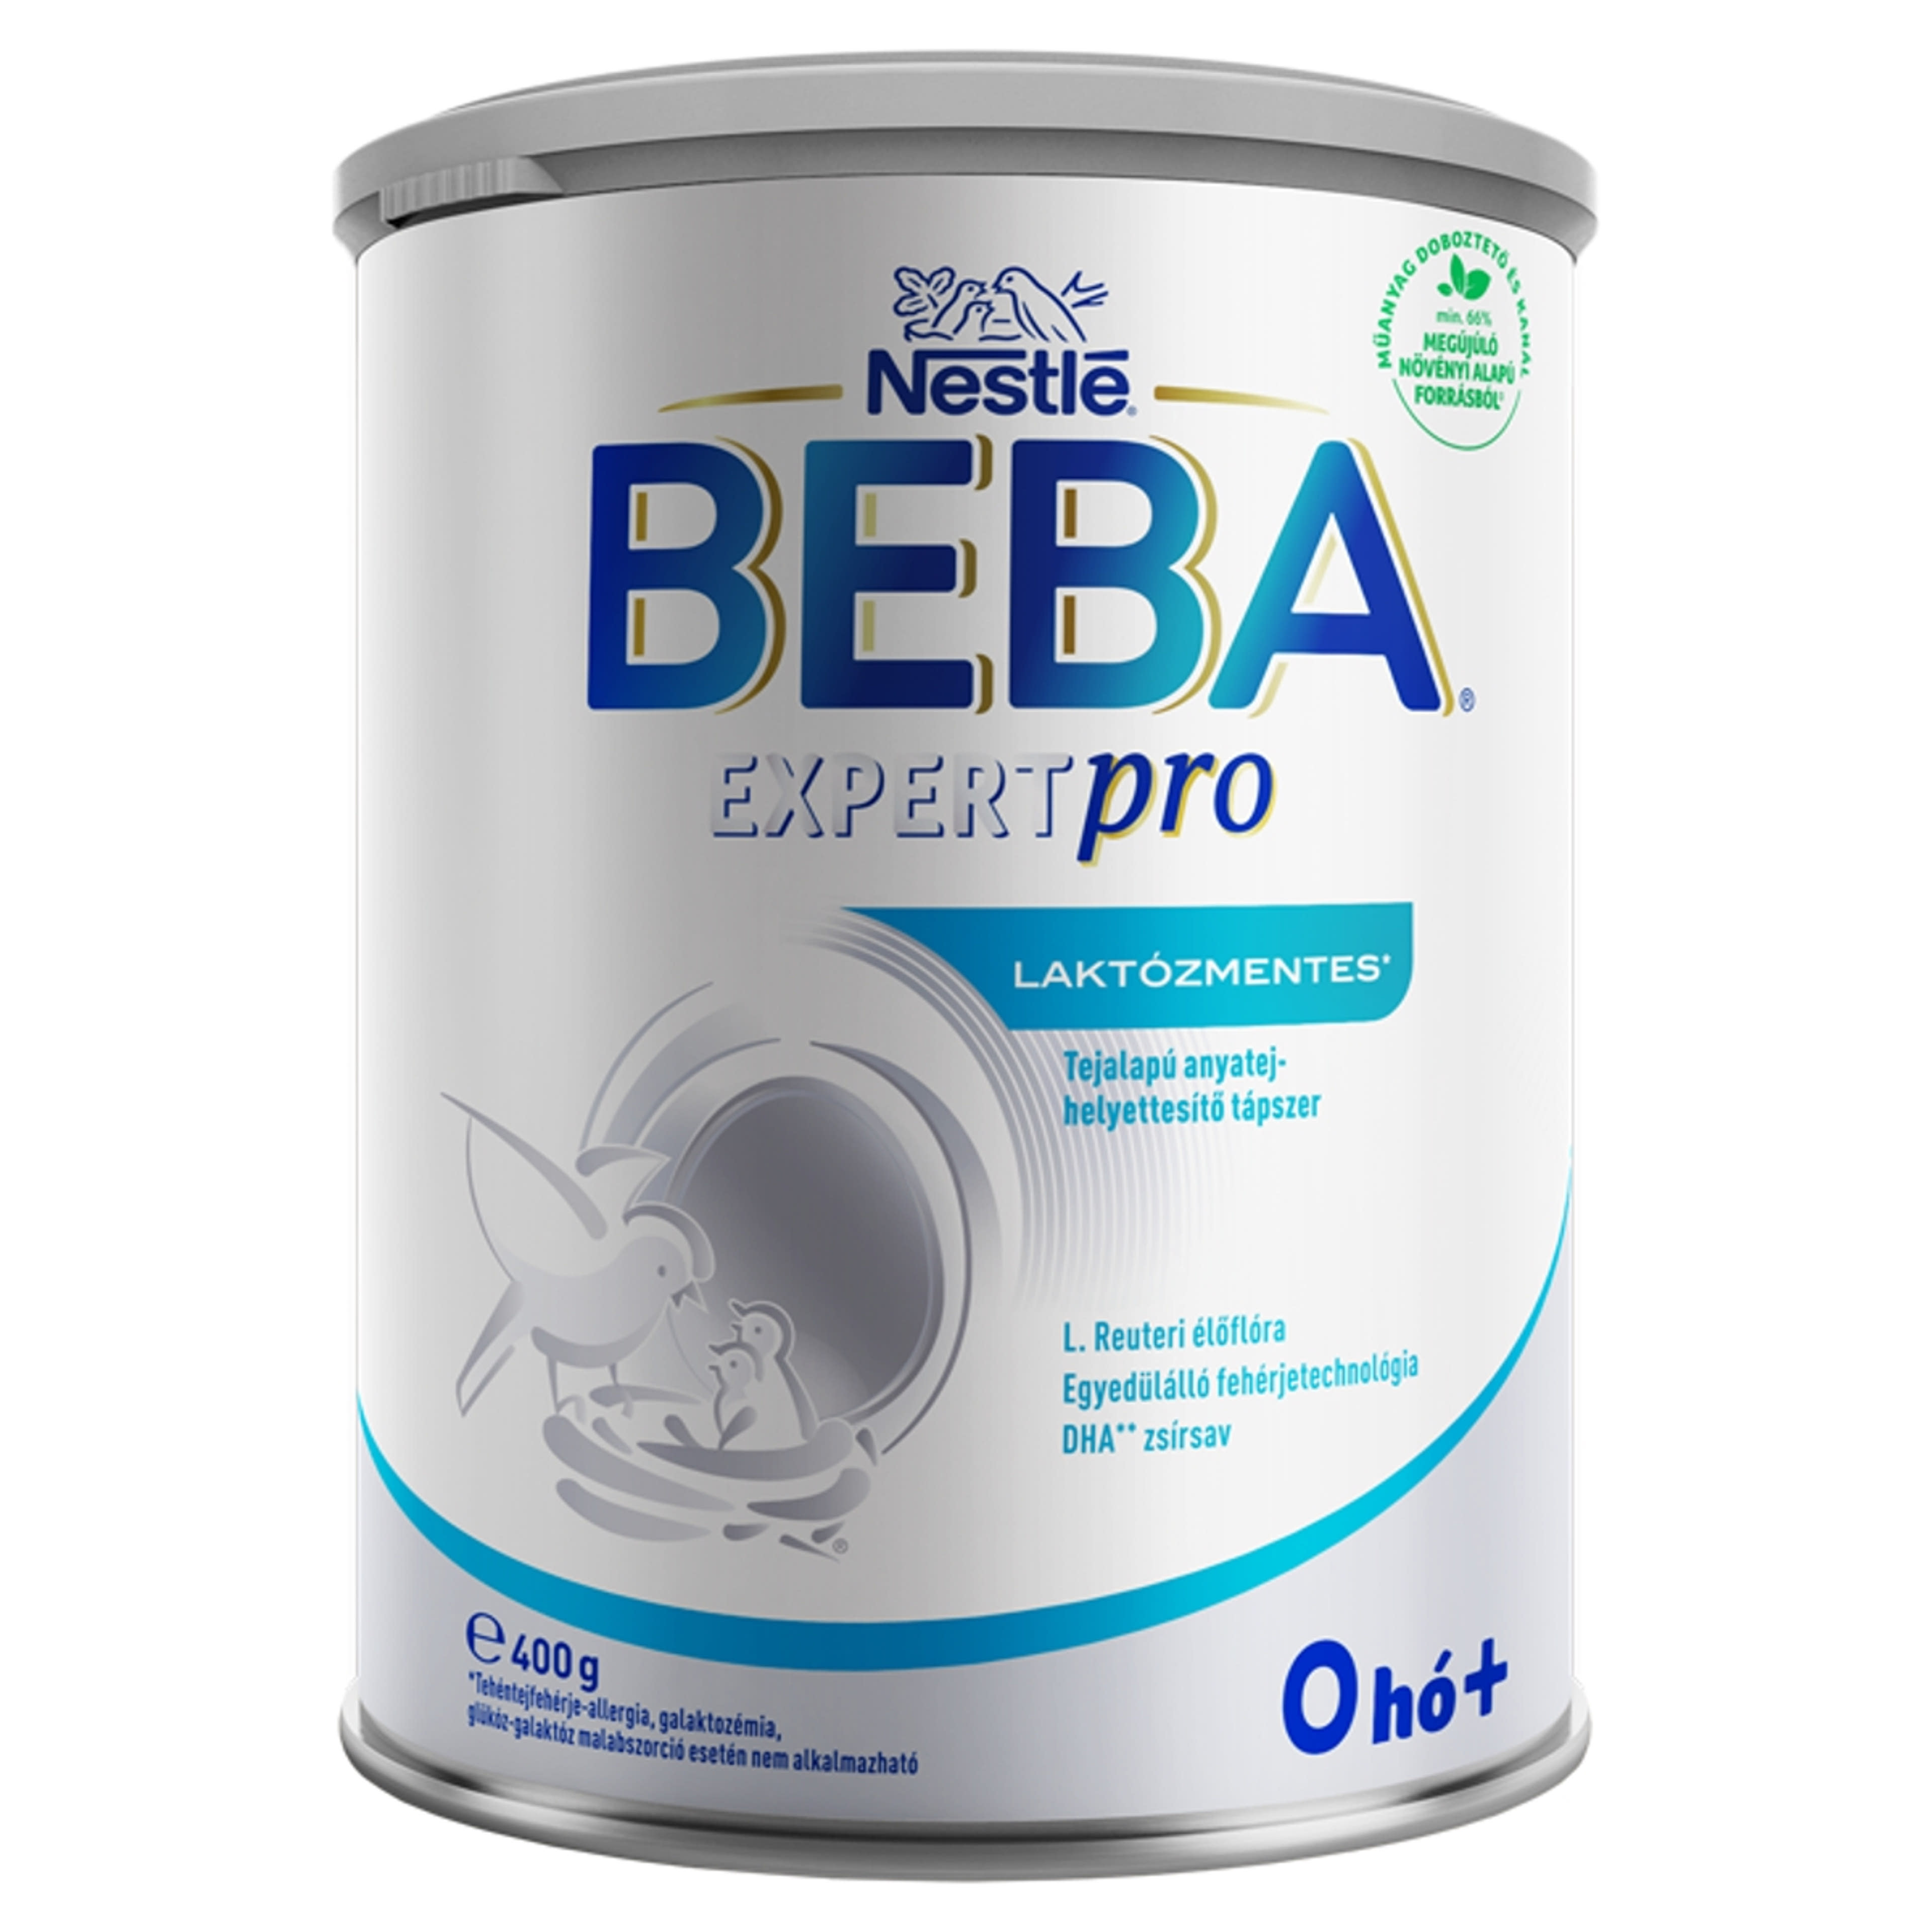 Beba Expertpro laktózmentes tejalapú anyatej-helyettesítő tápszer 0 hónapos kortól - 400 g